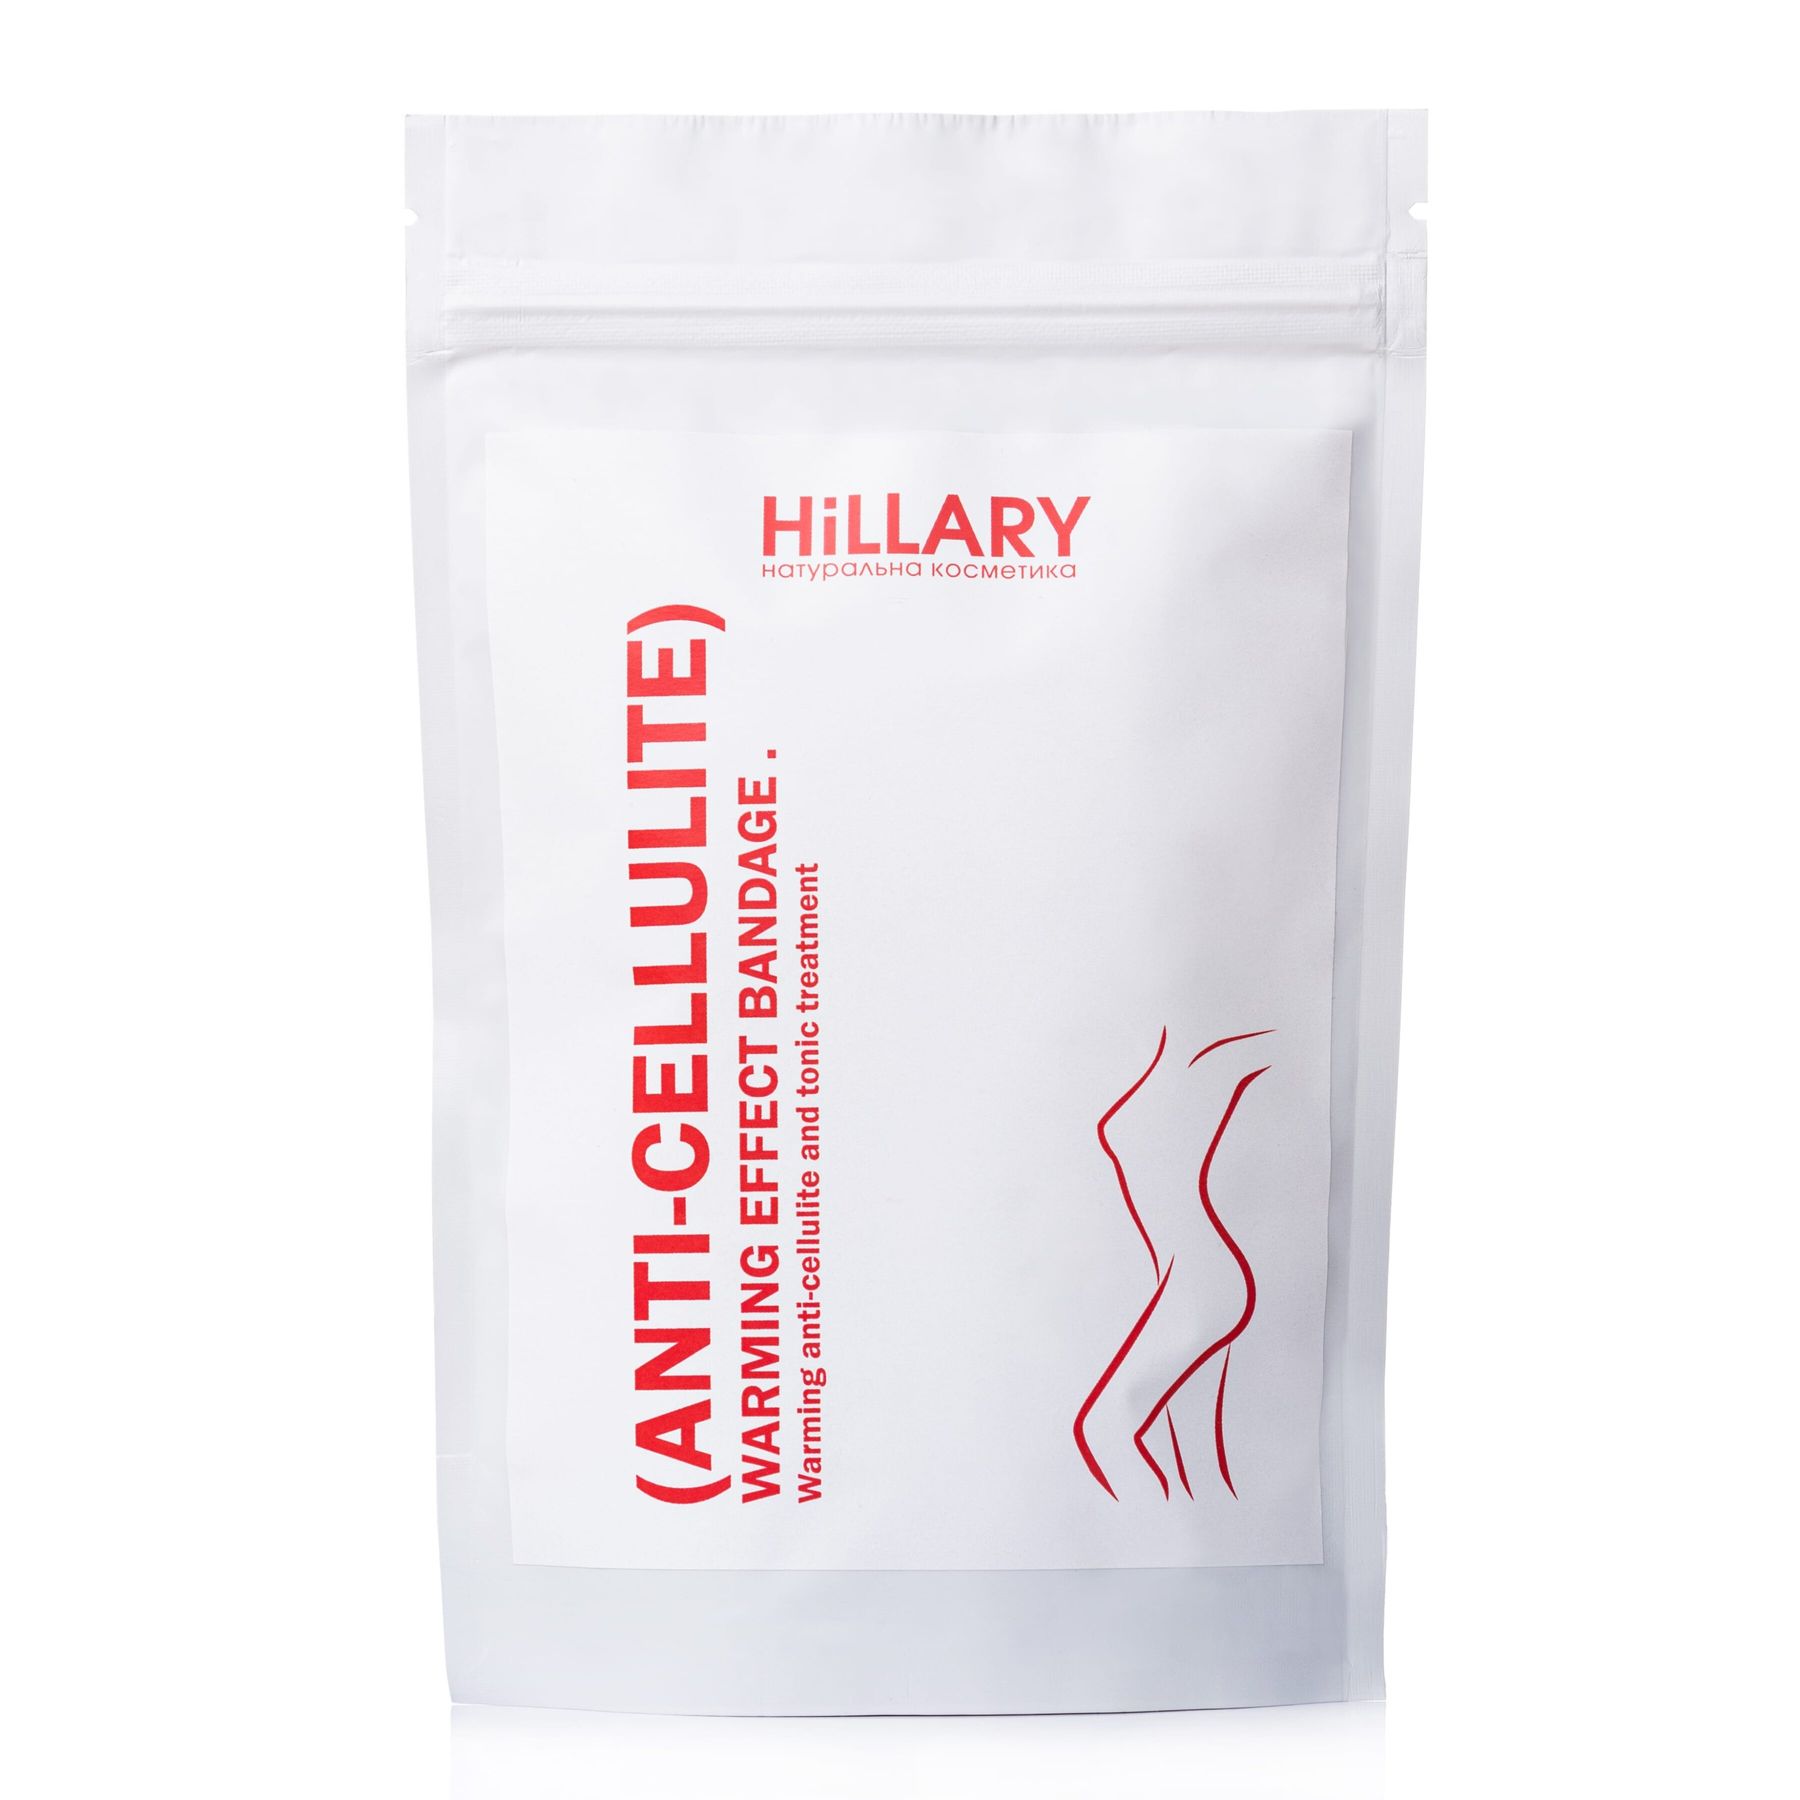 ДЛЯ ОПТА Разогревающие антицеллюлитные обертывания для тела Hillary Anti-Cellulite warming effect bandage